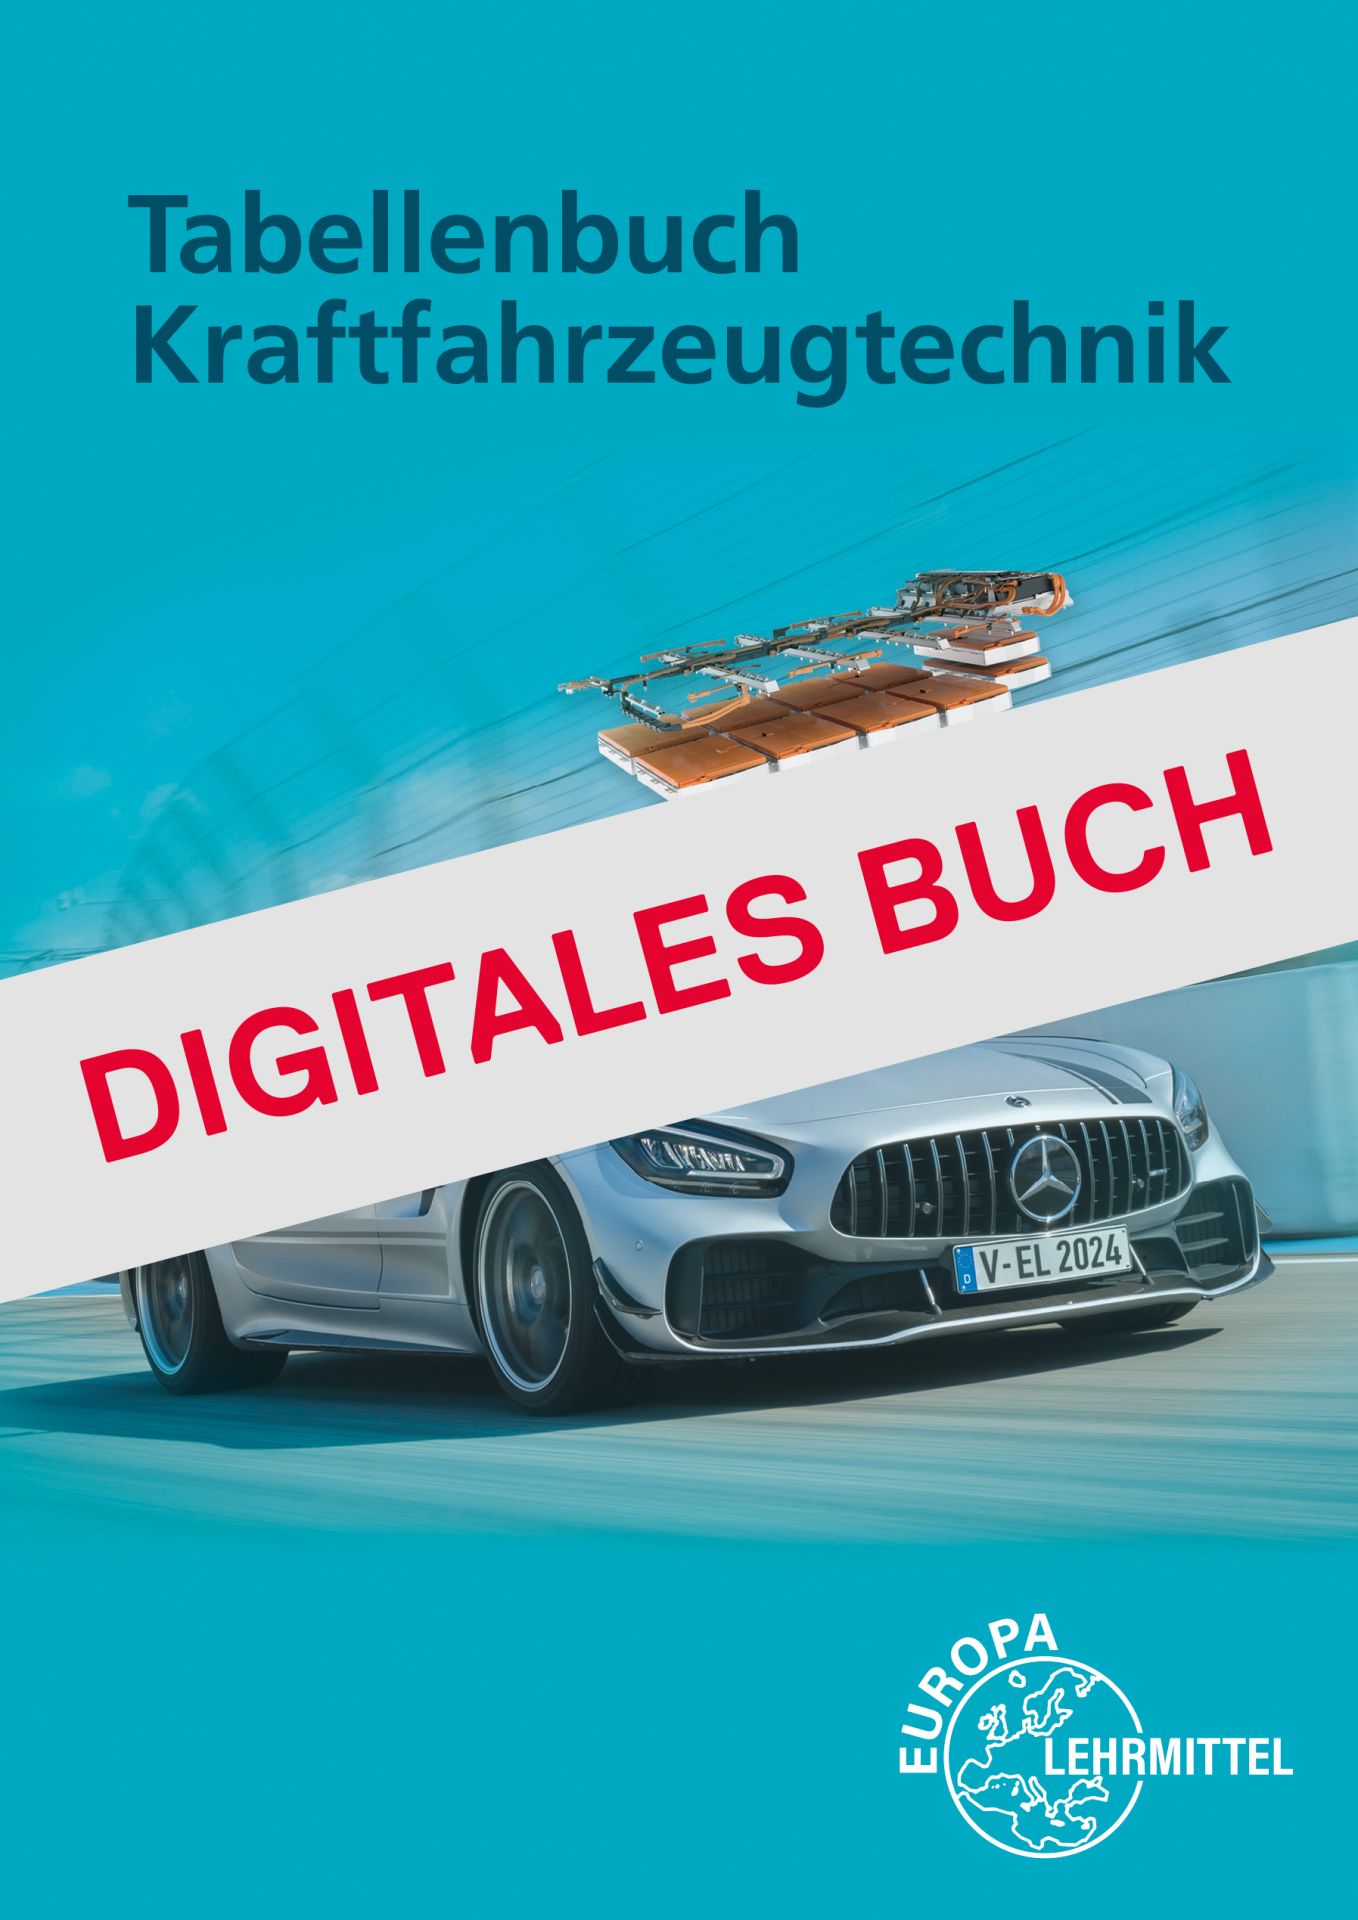 Tabellenbuch KFZ mit Formelsammlung - Digitales Buch